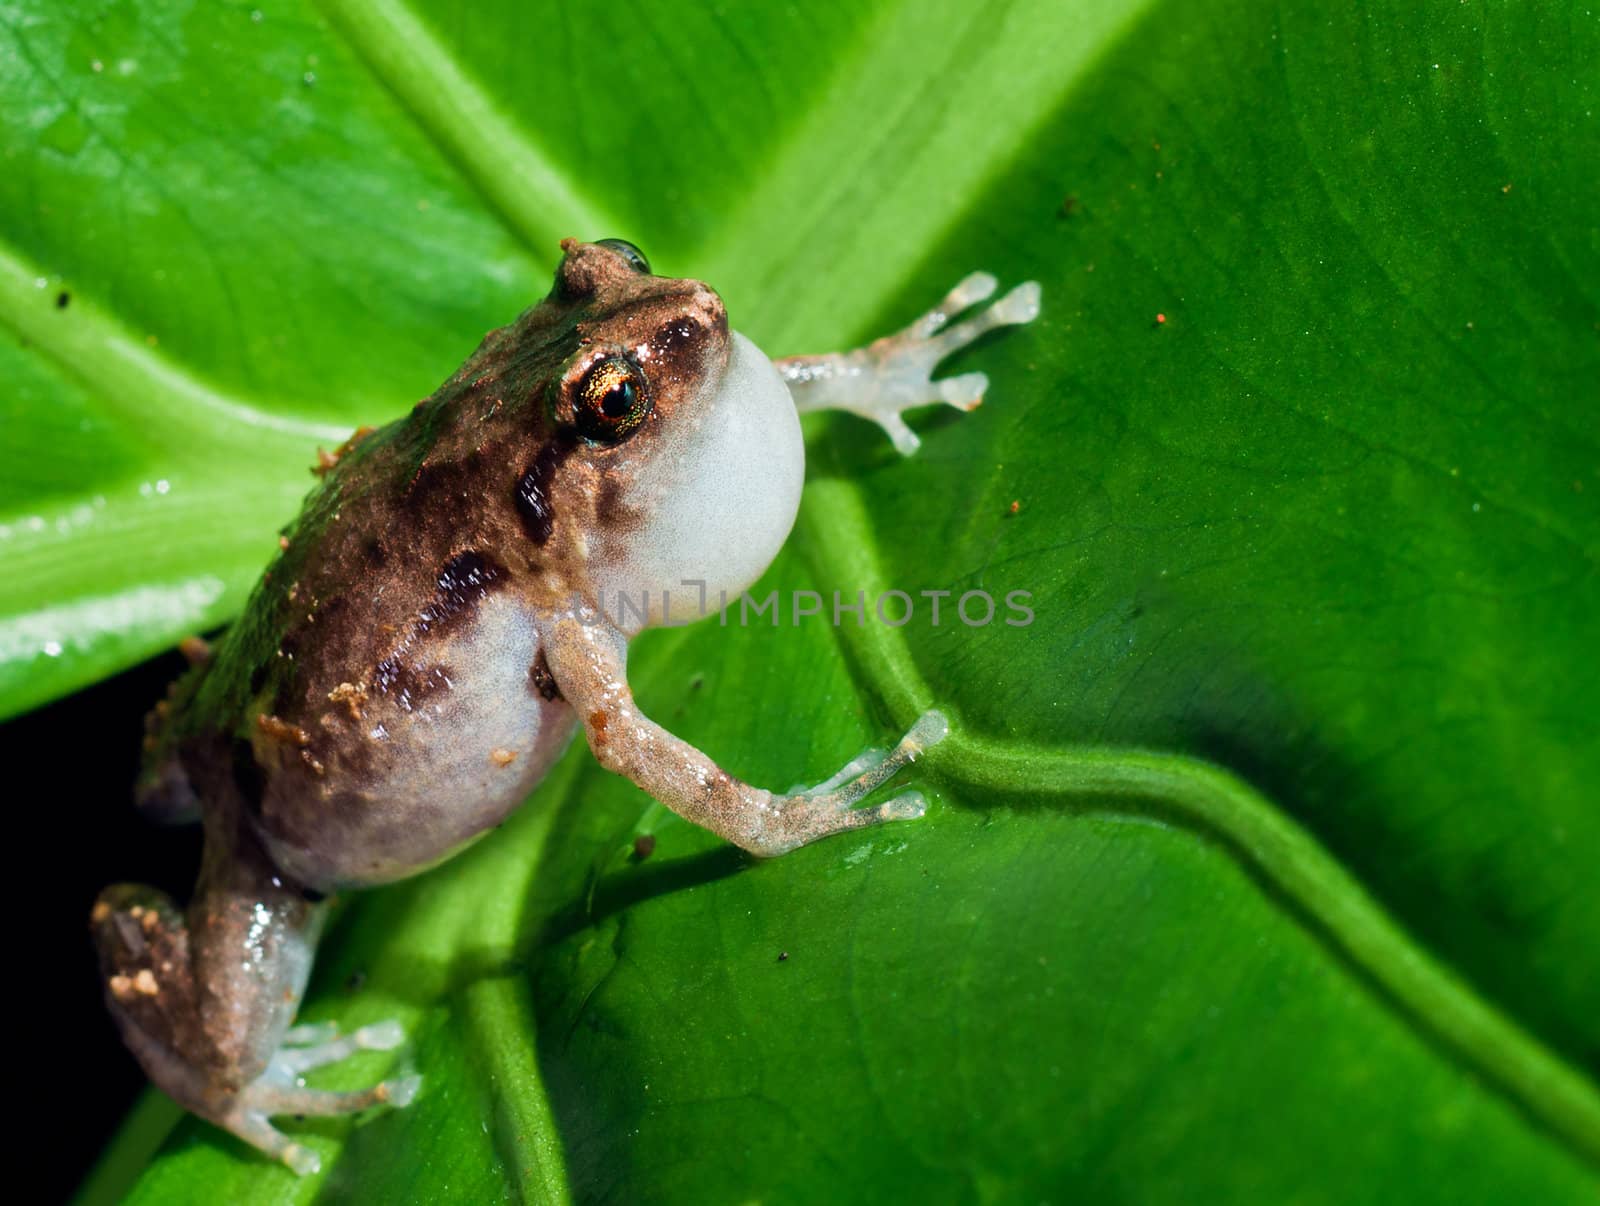 Macroshot of the tiny common nursery frog, Cophixalus ornatus by Jaykayl